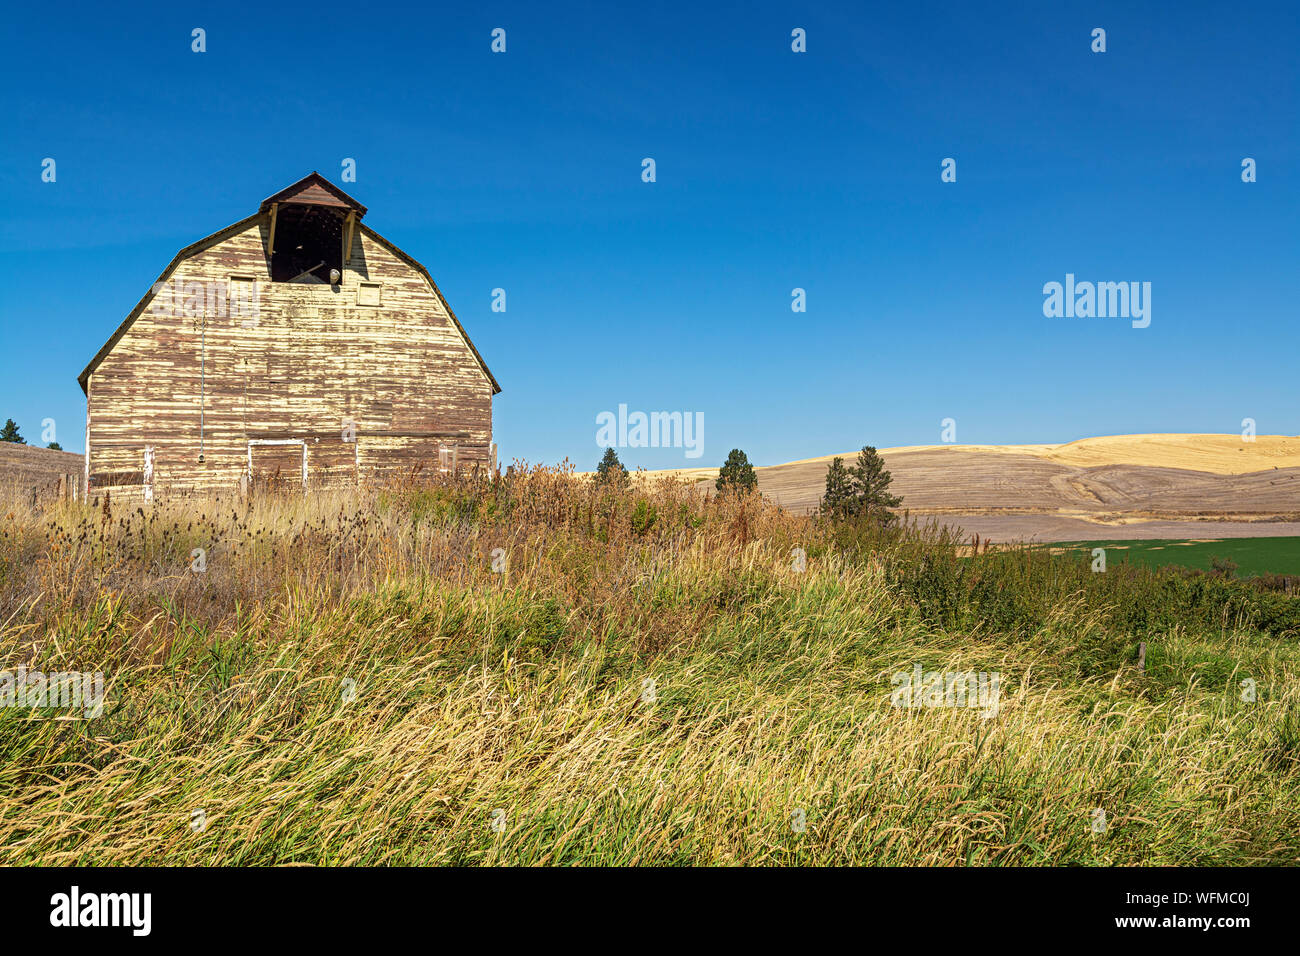 Washington, Palouse Region, Hwy 26, Holz- scheune, Herbst, Weizen Felder nach der Ernte Stockfoto